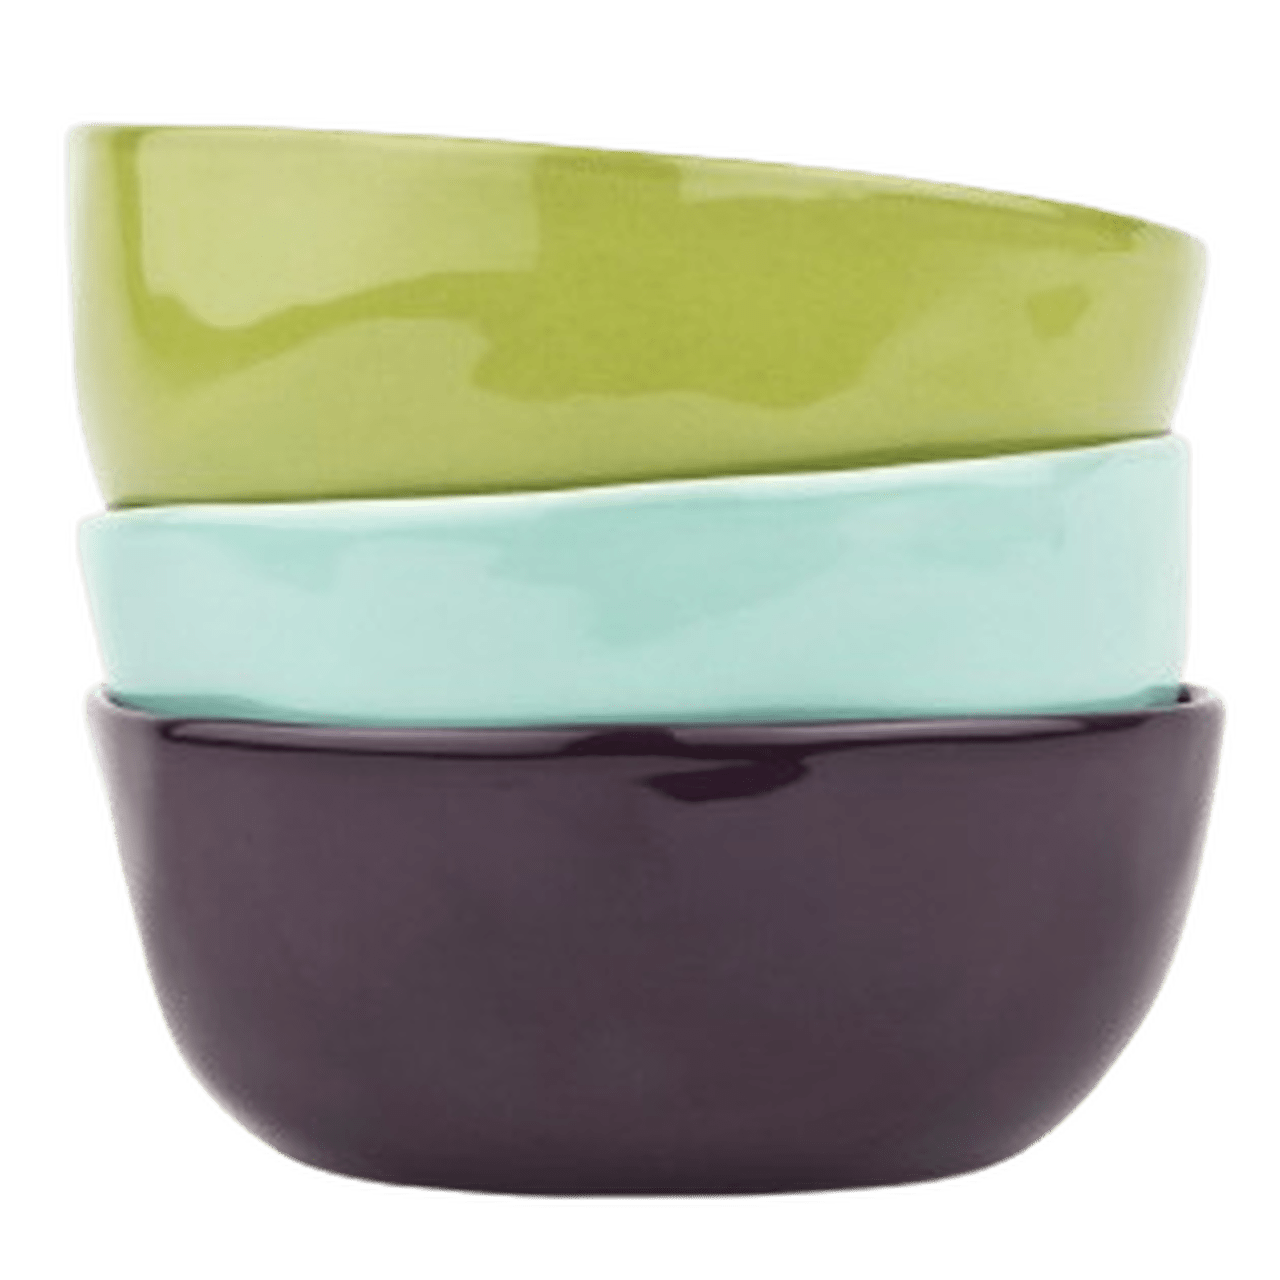 Green Large Ceramic Dipping Bowl